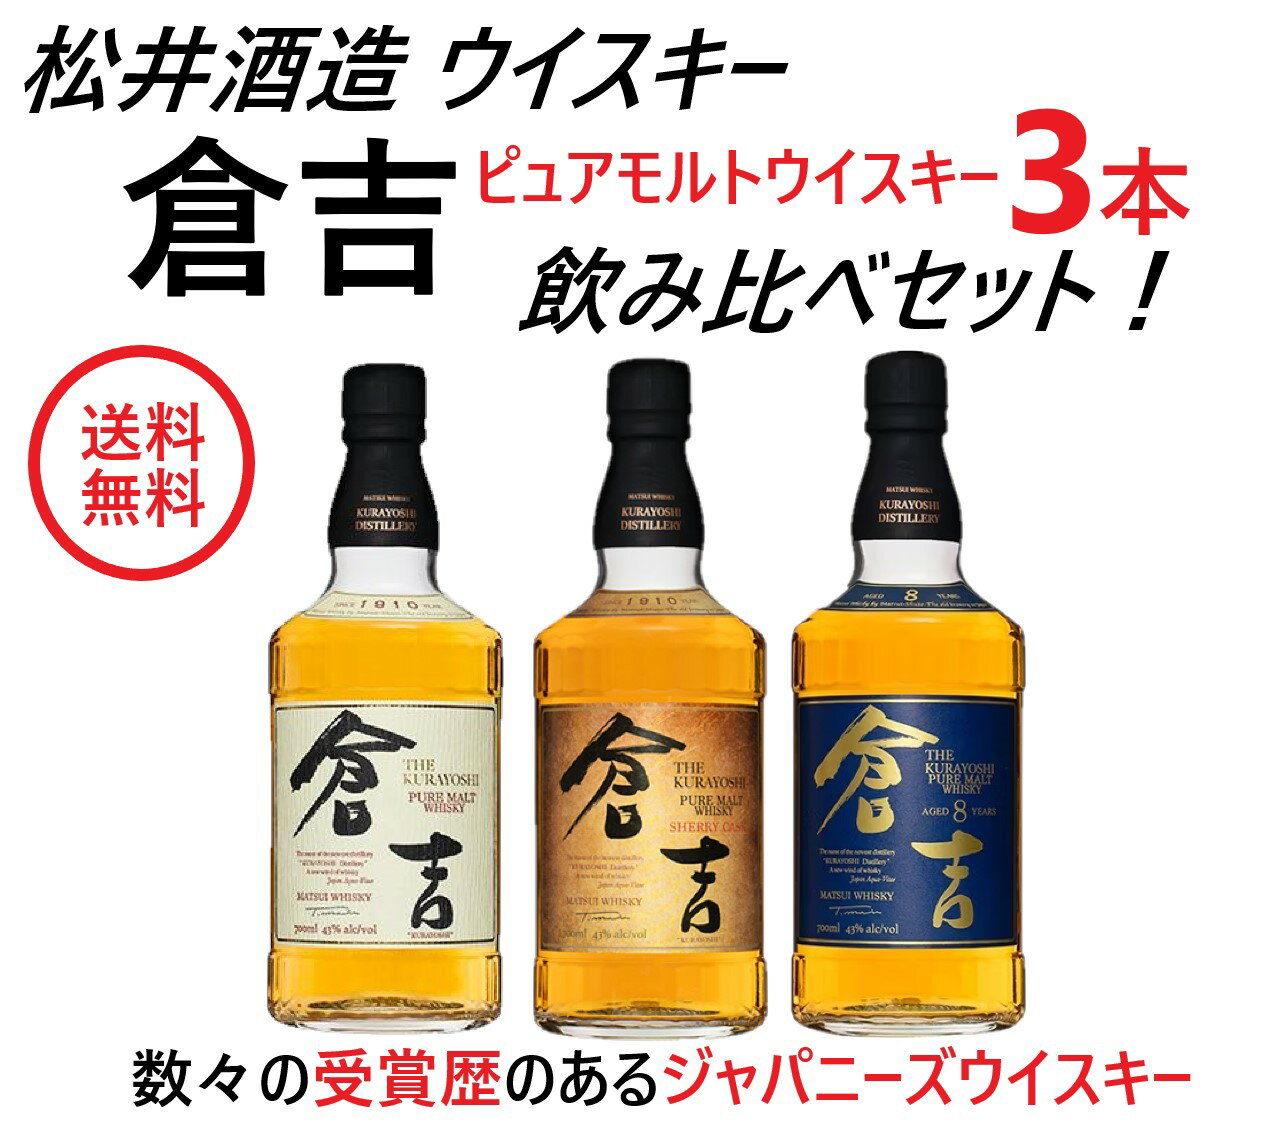 【送料無料】松井酒造 国産 ピュアモルトウイスキー 倉吉 3